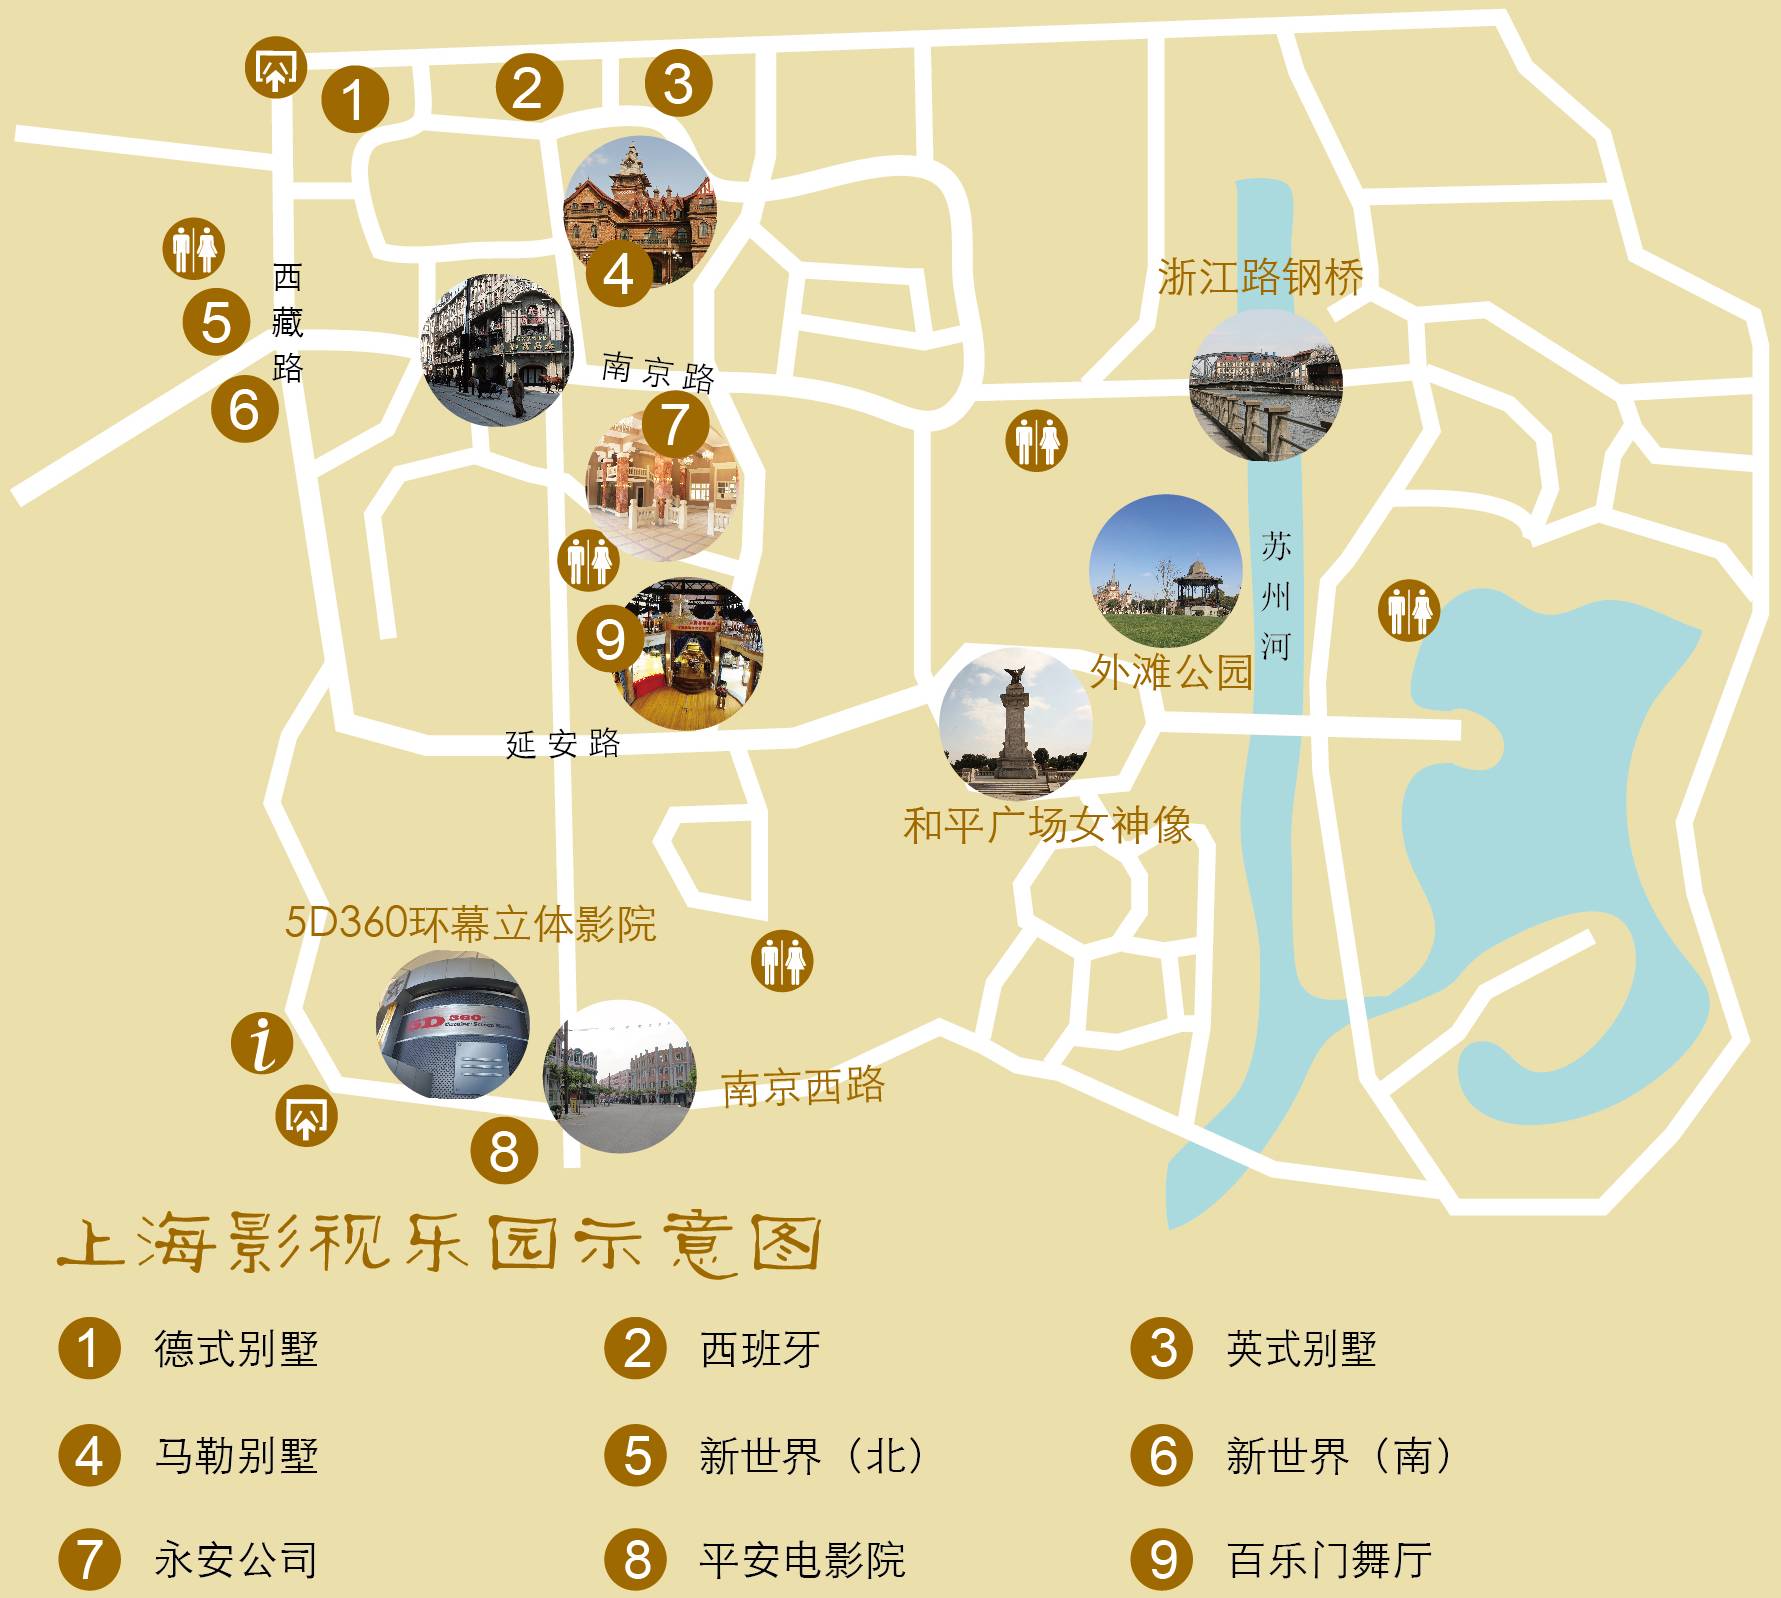 上海影视乐园旅游导览图 月湖雕塑公园旅游导览图松江二十四景▼